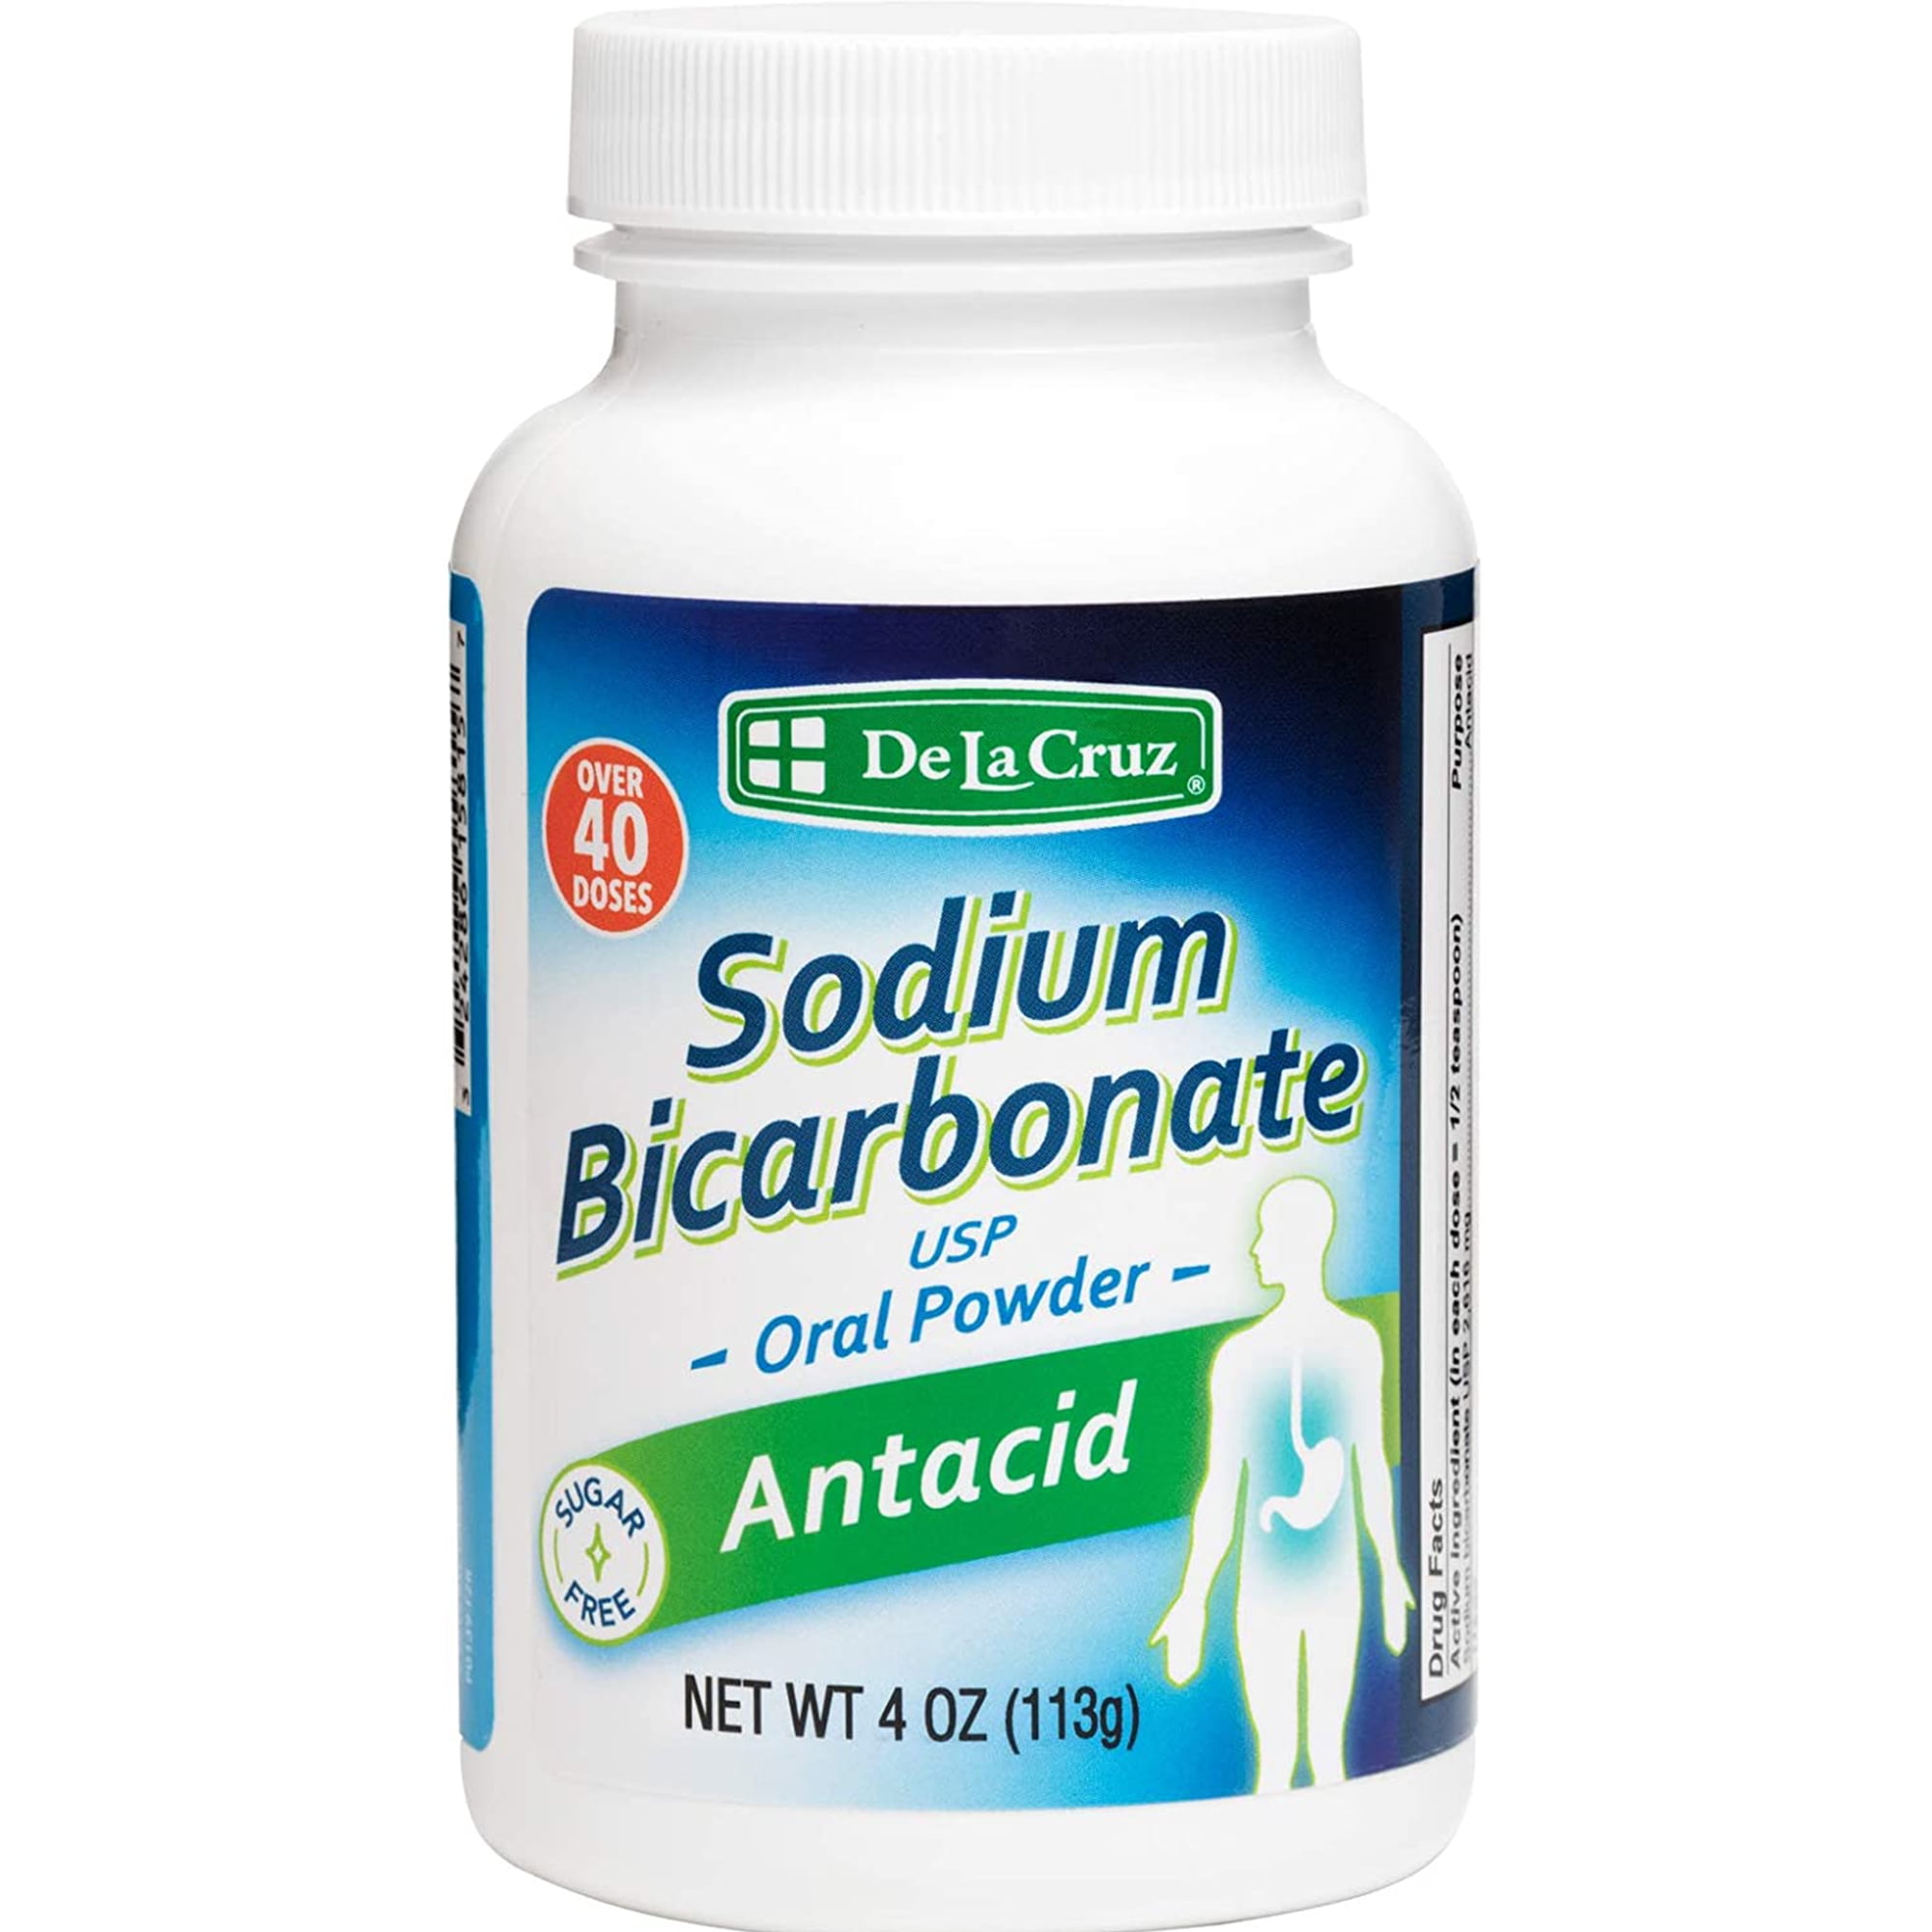 de La Cruz Sodium Bicarbonate Antacid Oral Powder, 4 oz